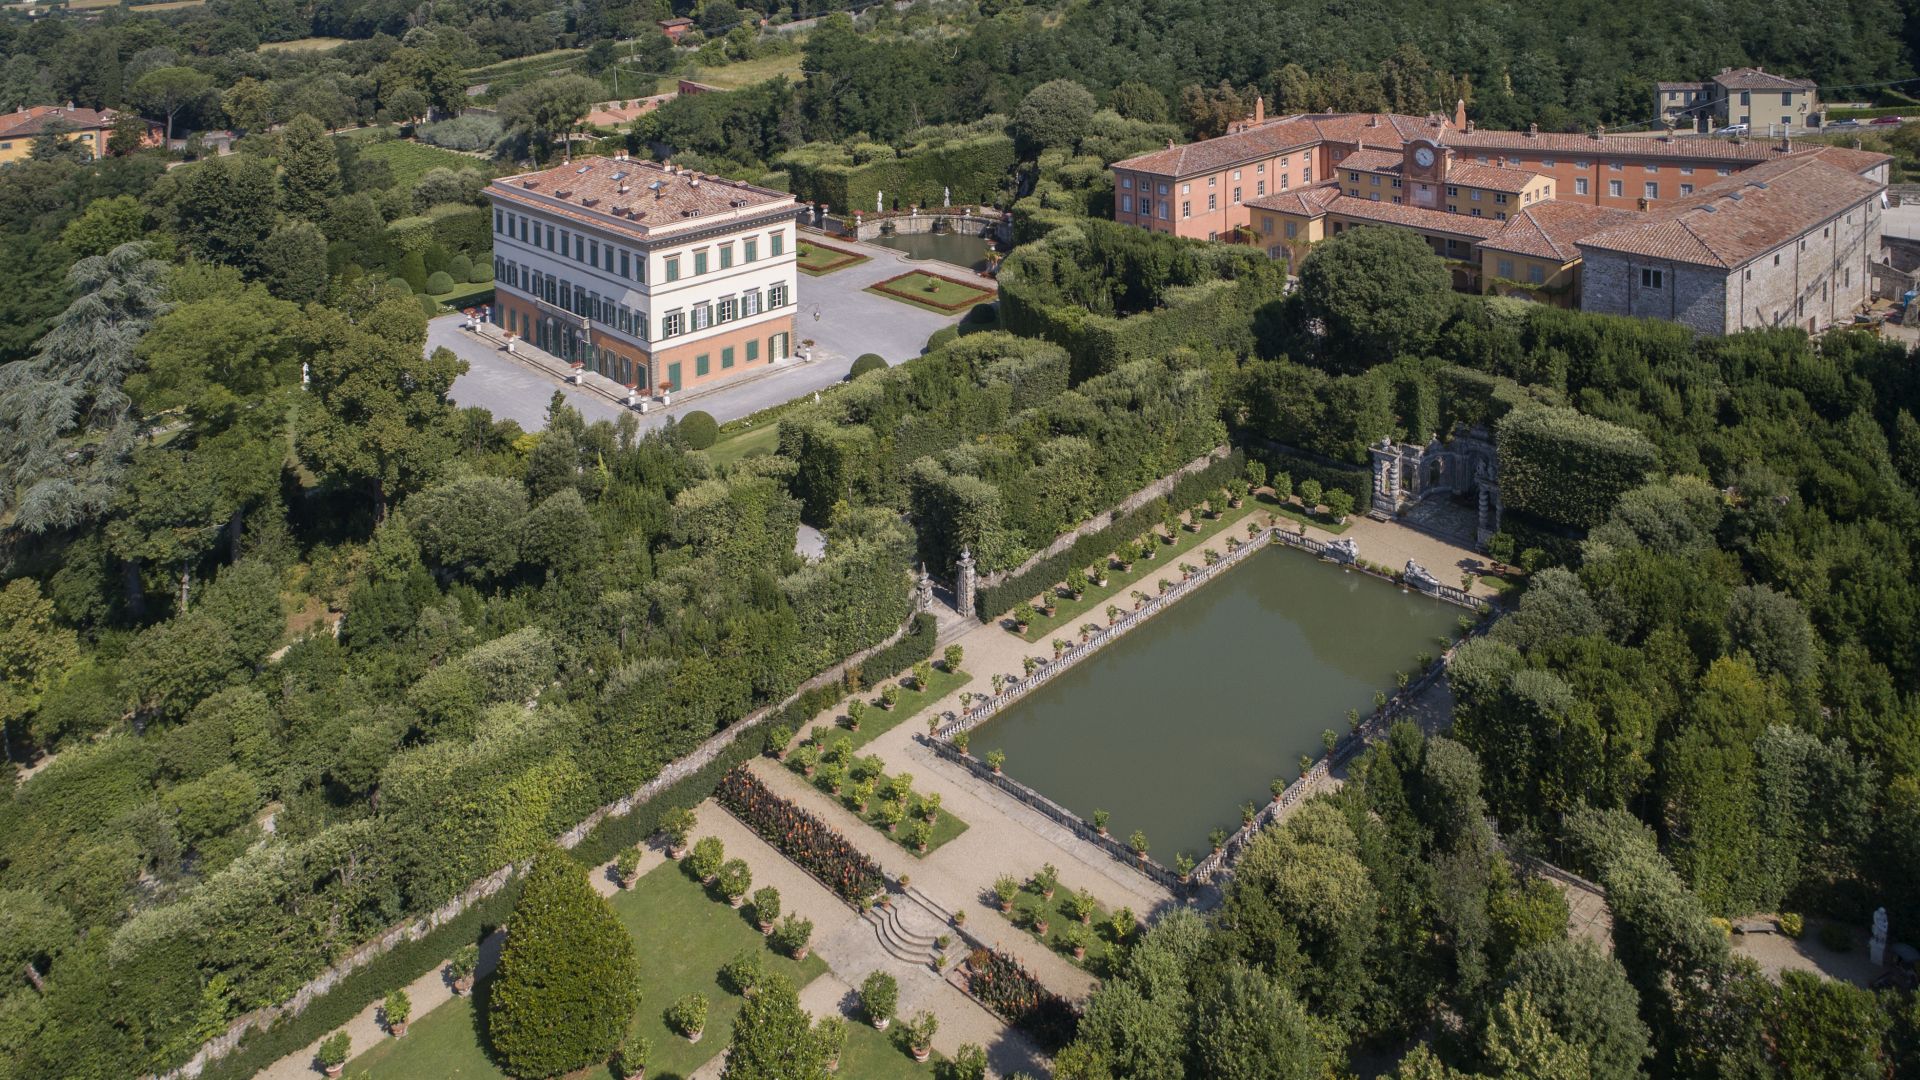 Aerial view of the Royal Villa of Marlia